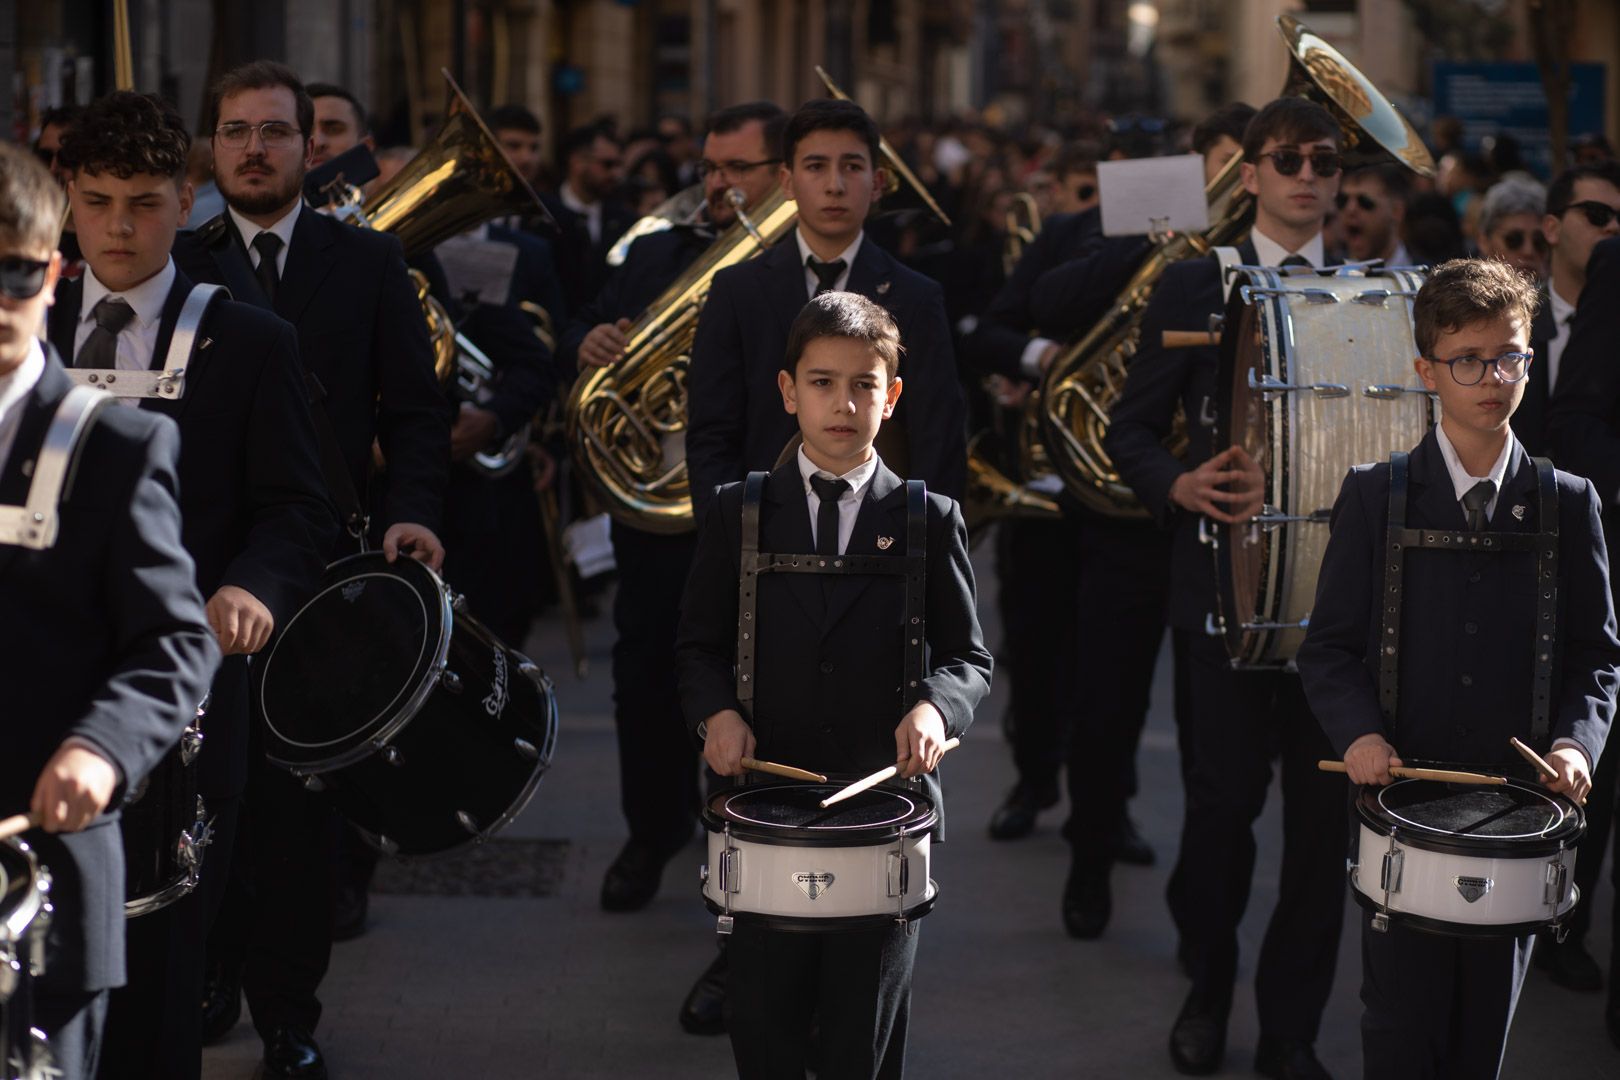 GALERÍA | La mejores imágenes de la procesión de La Borriquita